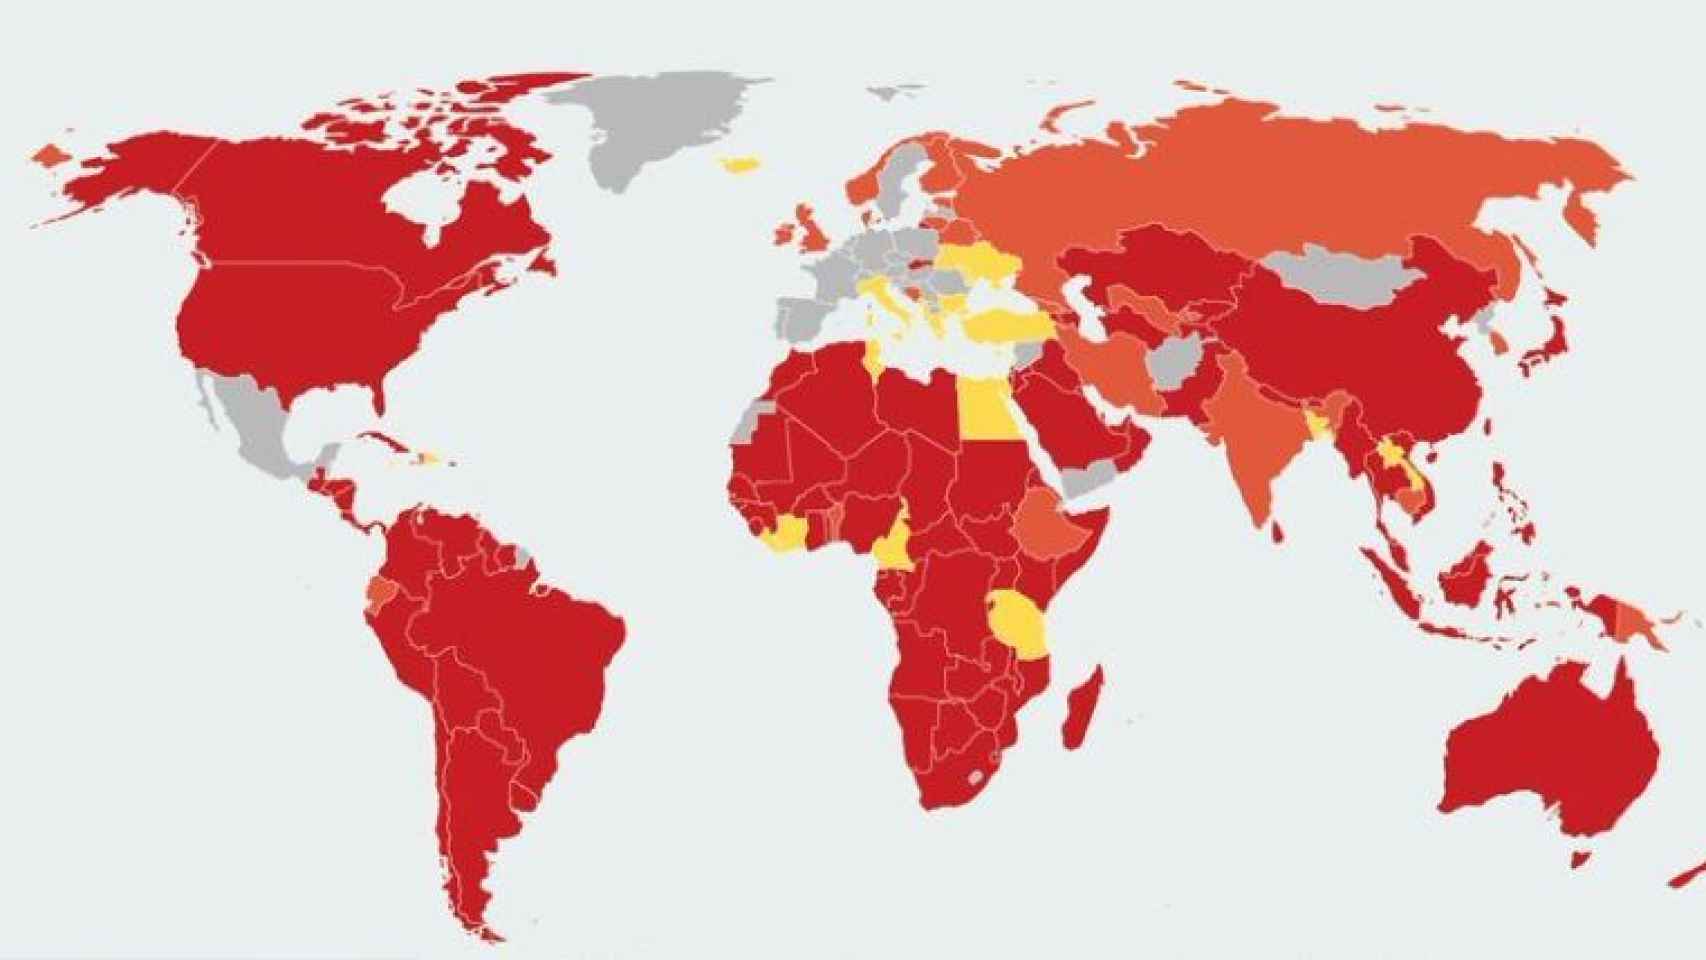 El mapa de los países que imponen restricciones: del rojo (las más estrictas), al amarillo (las más laxas).